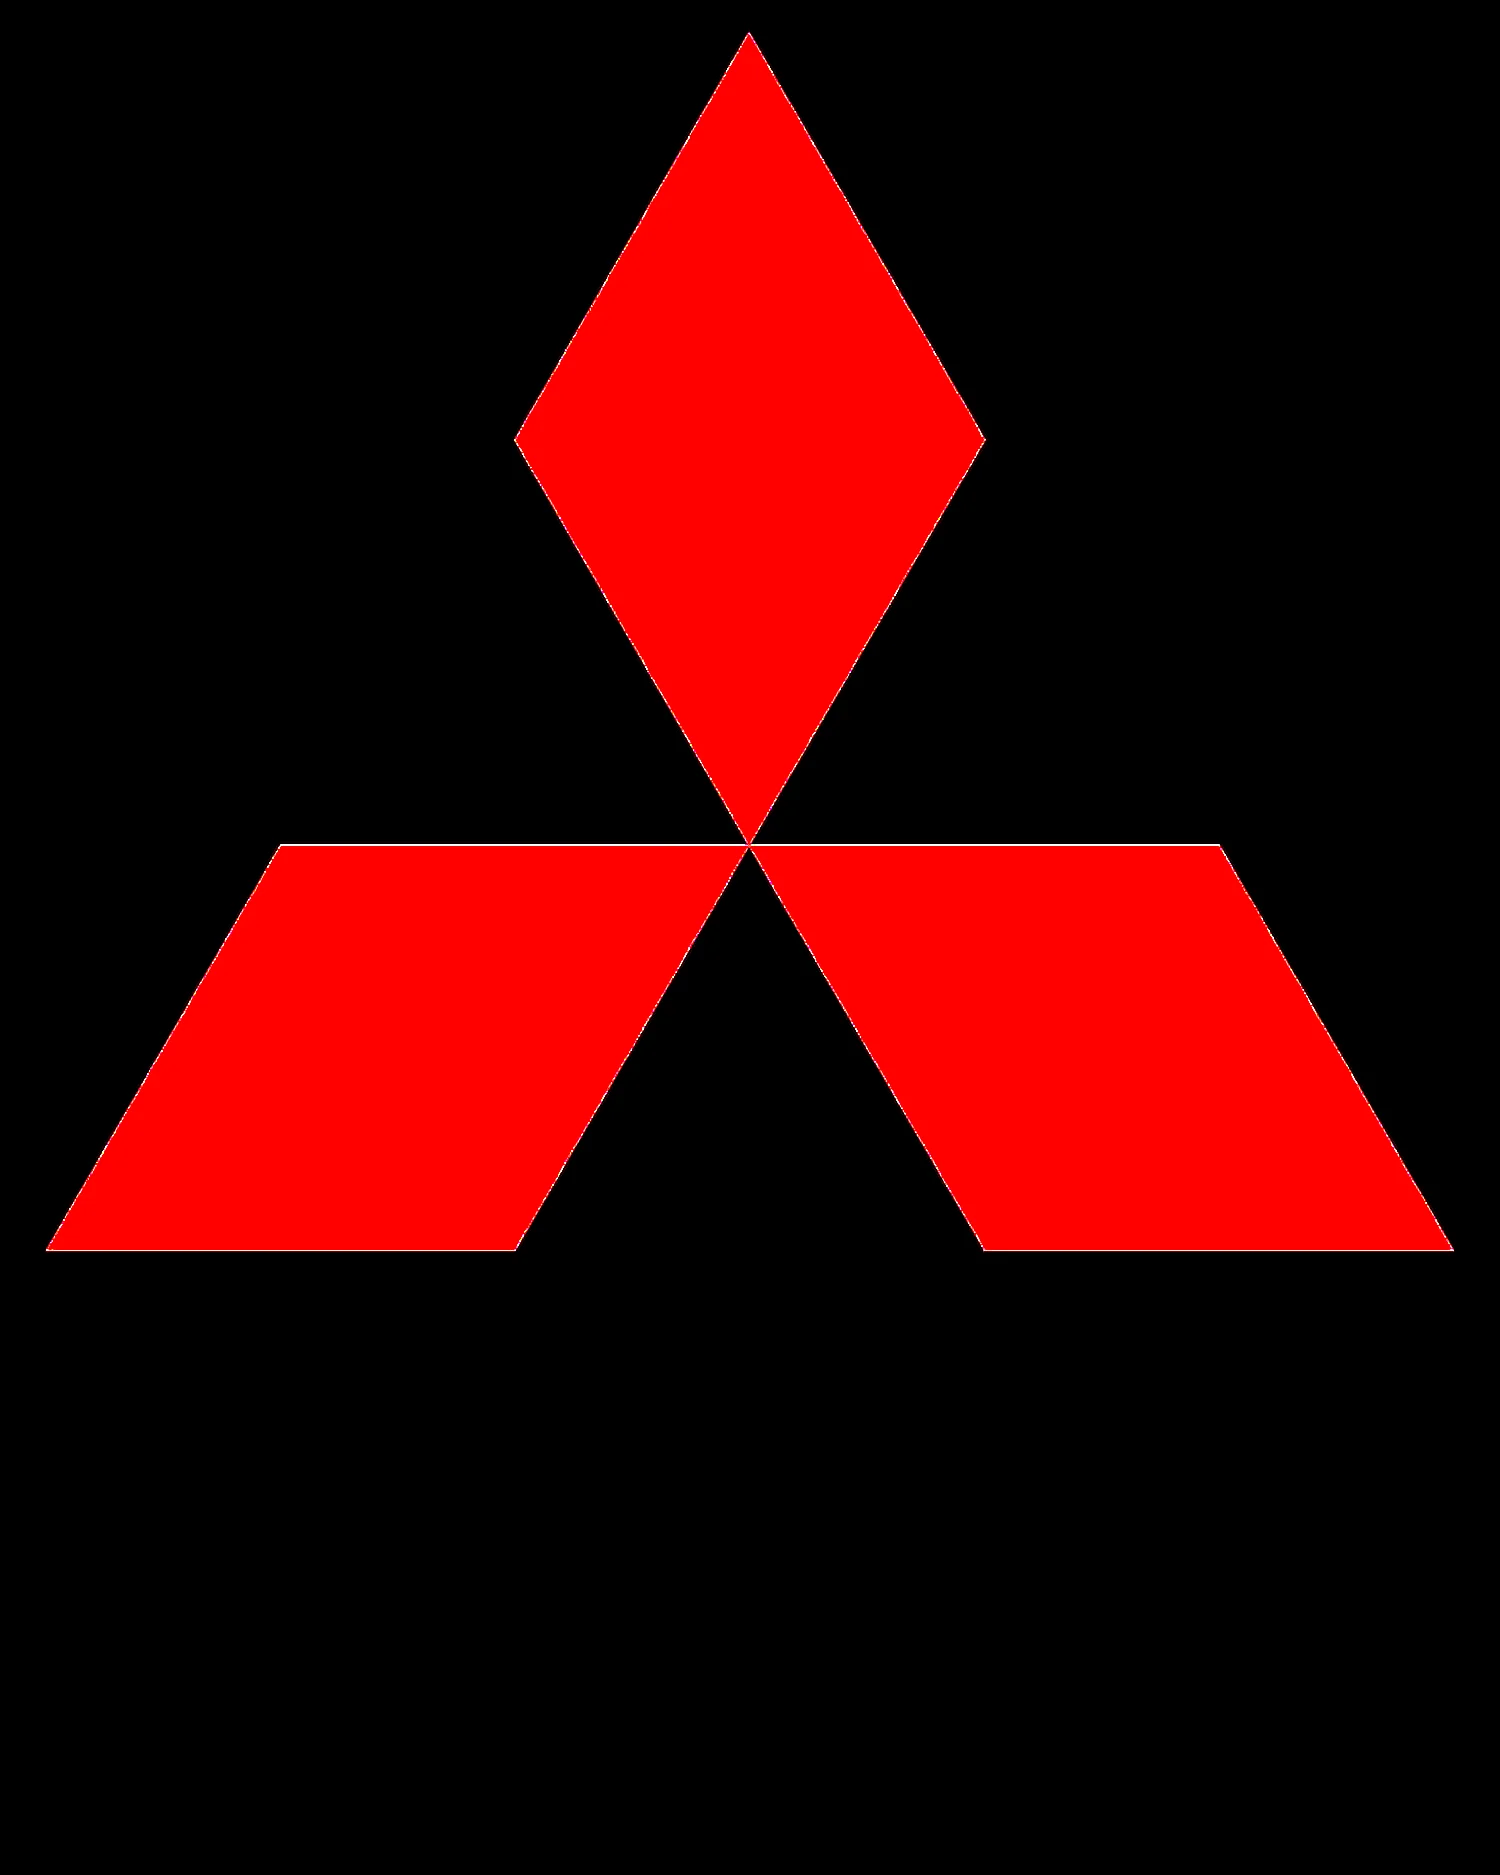 Mitsubishi Motors Corporation 1970